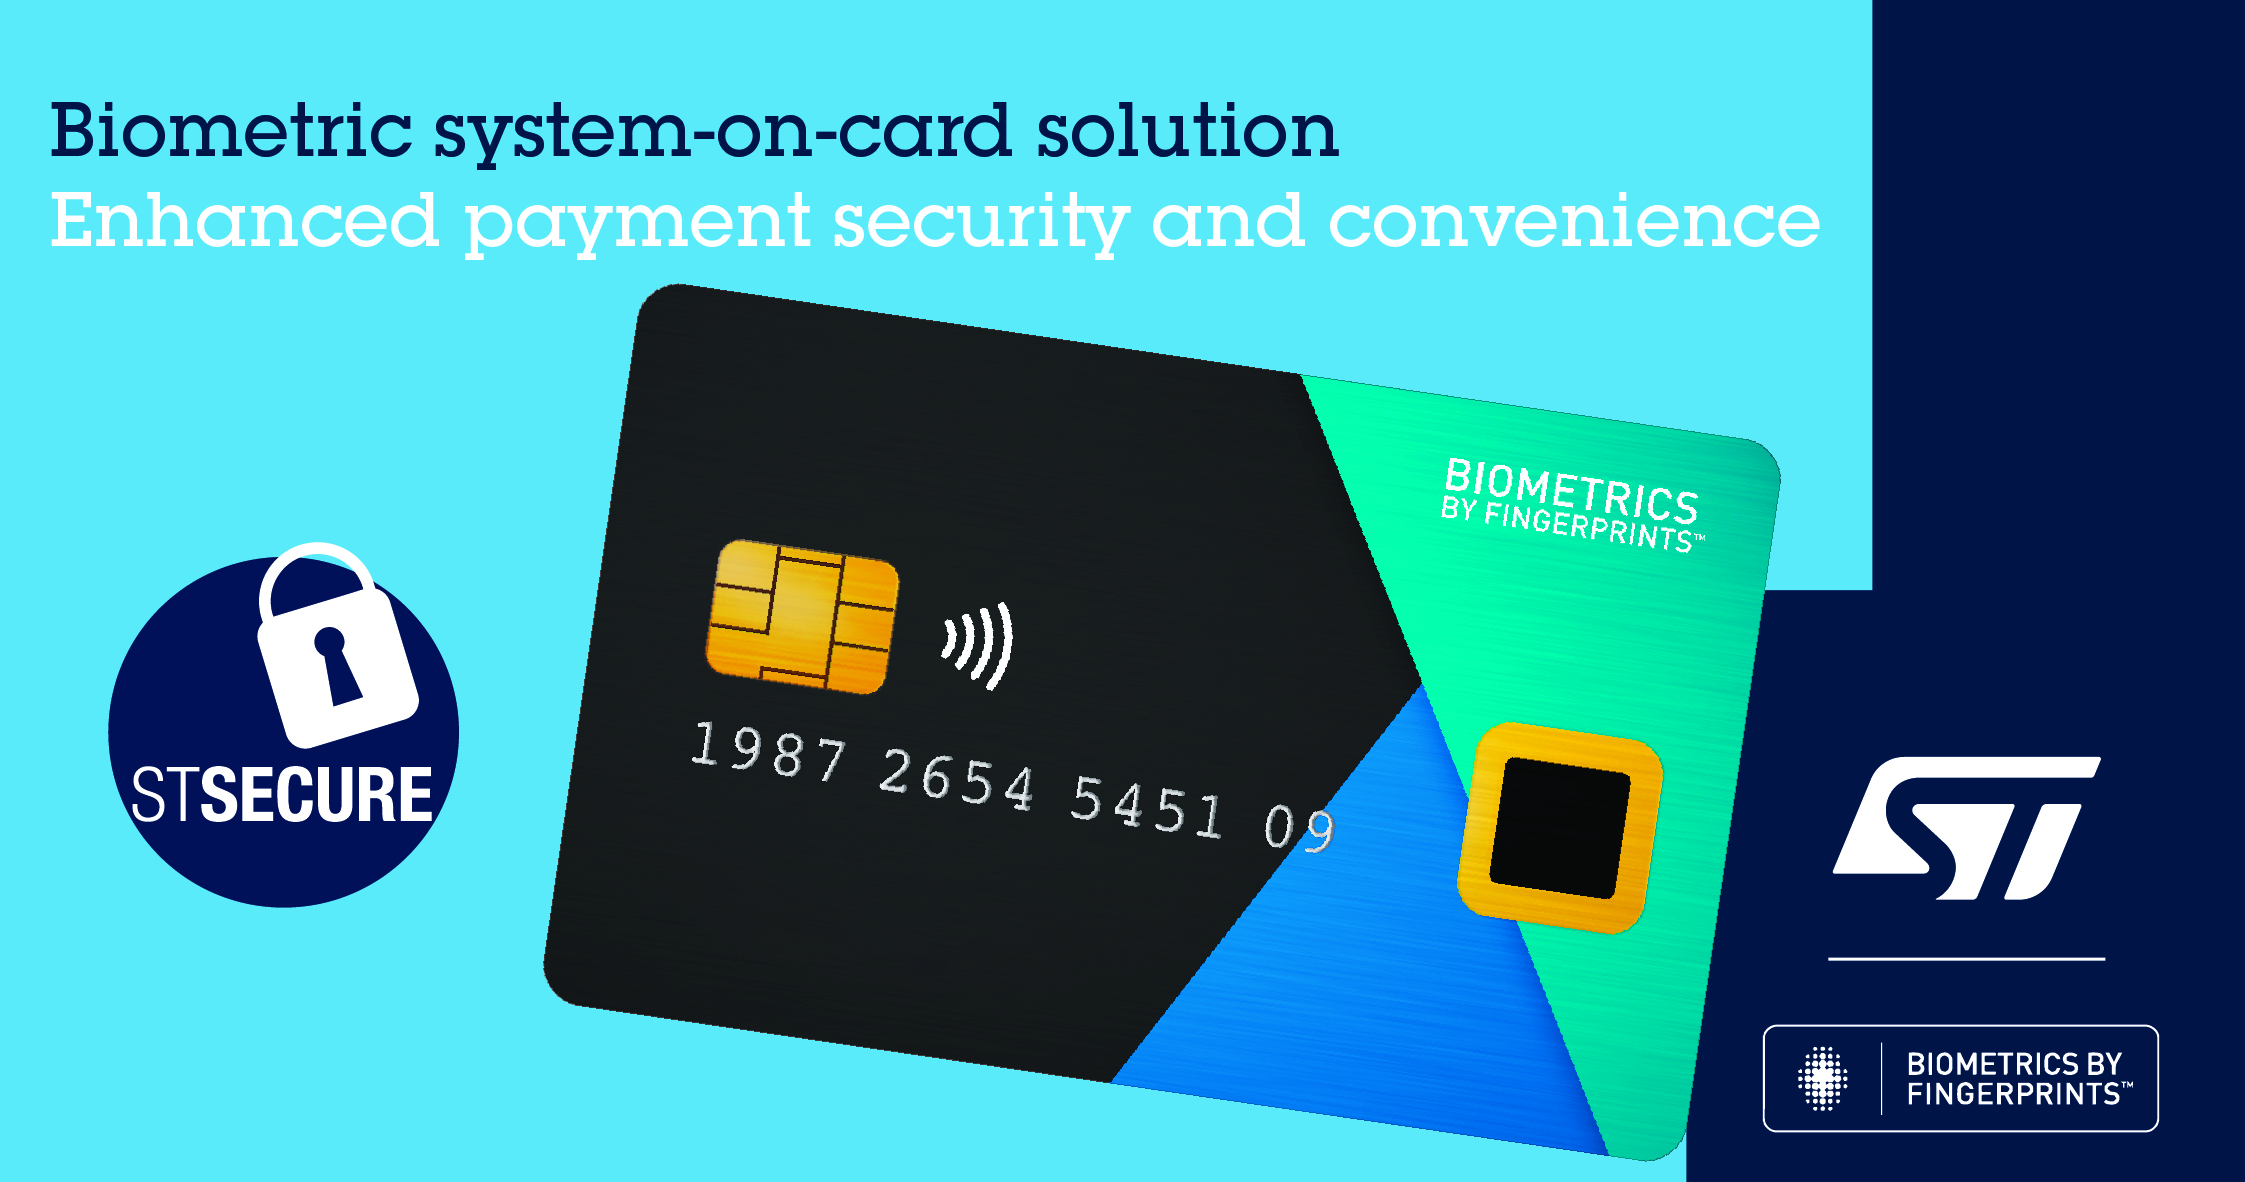 T4267S -- Jul 9 2020 -- ST Fingerprint Cards biometric payment_IMAGE